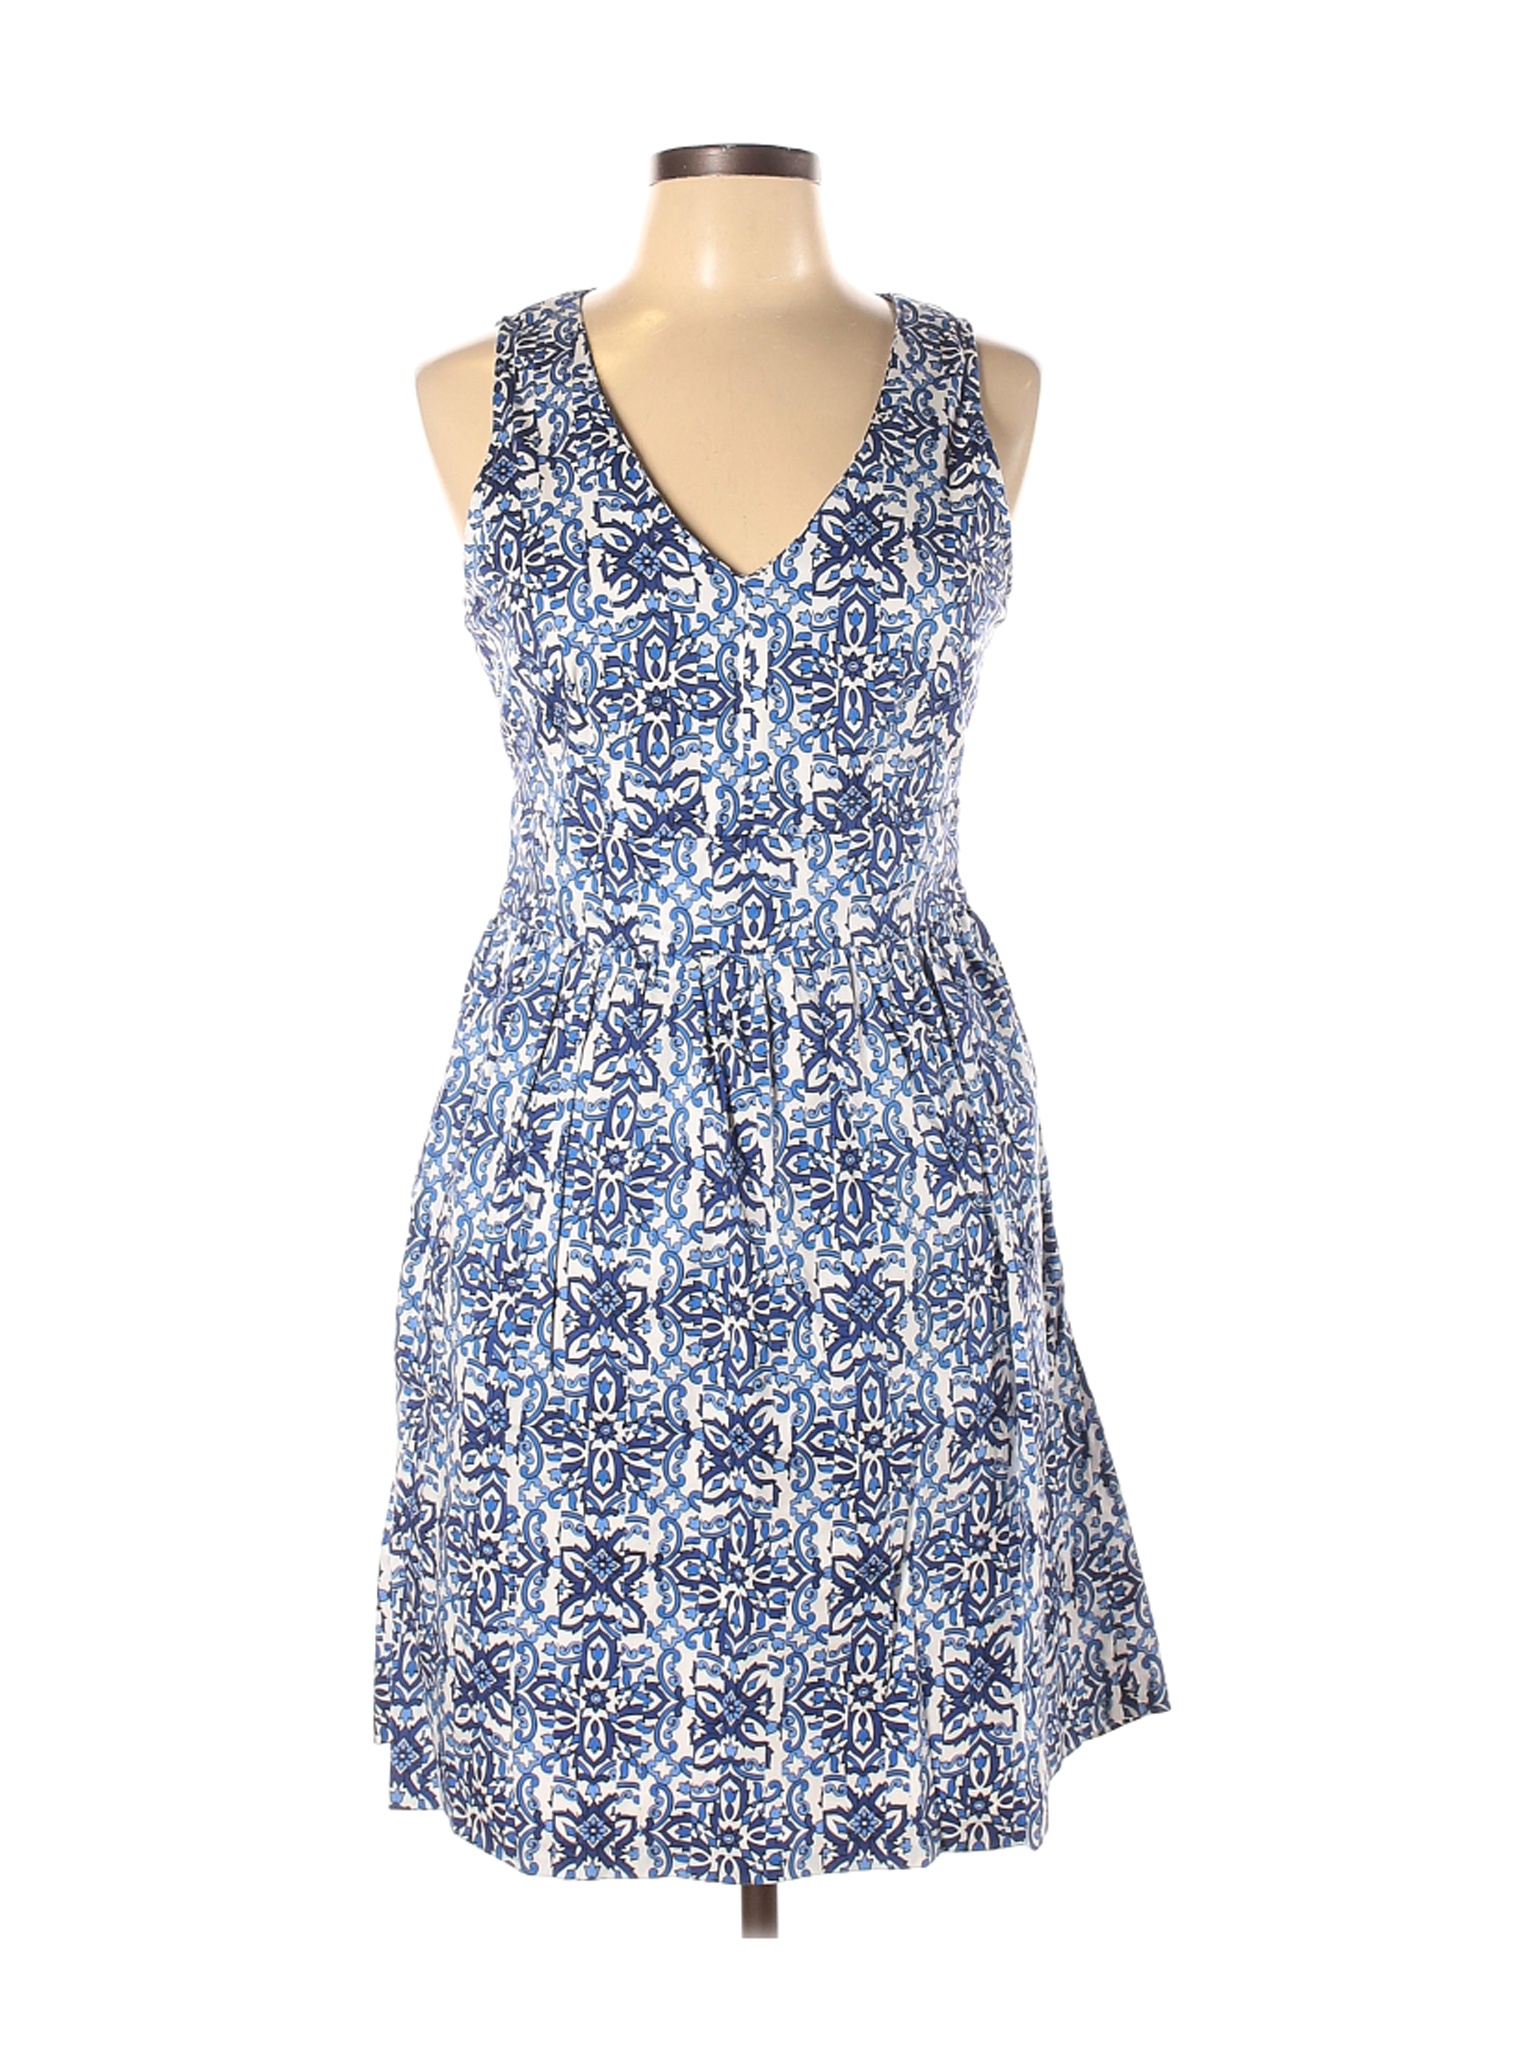 Milly Women Blue Casual Dress 10 | eBay